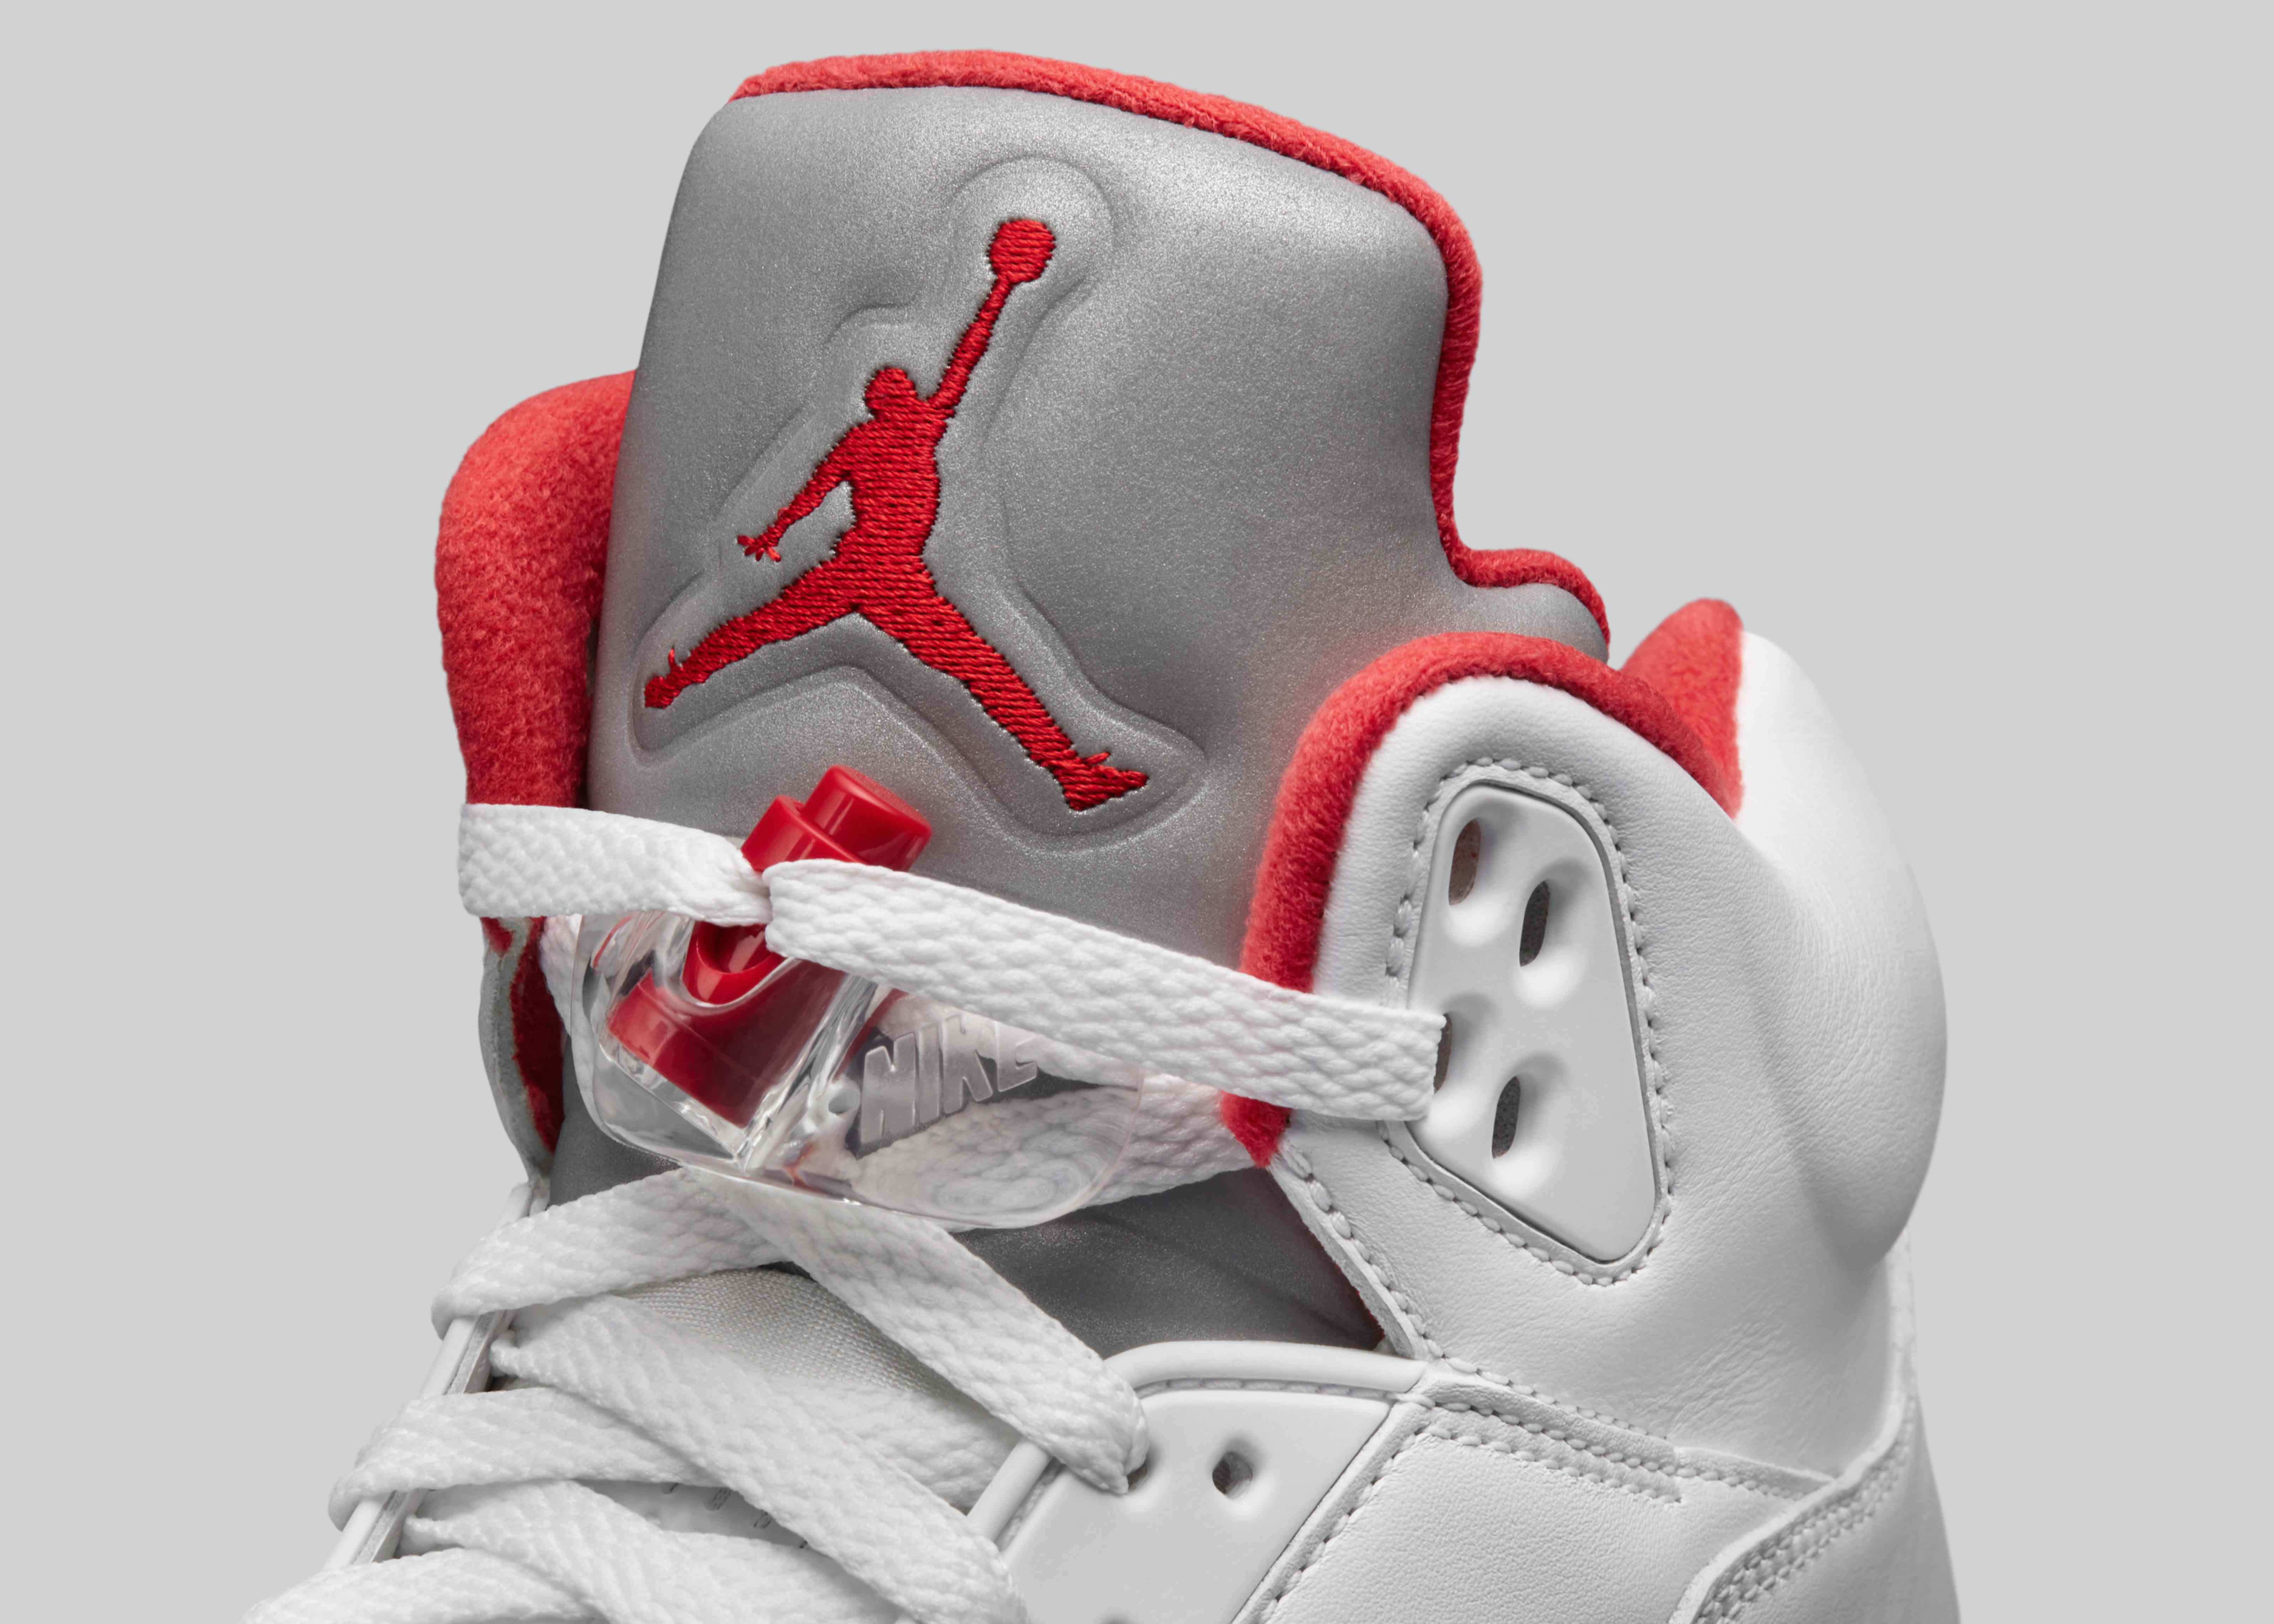 Шнуровка jordan. Air Jordan 4 High. Nike Air Jordan шнуровка. Nike Air Jordan 6 шнуровка. Air Jordan 5 High.